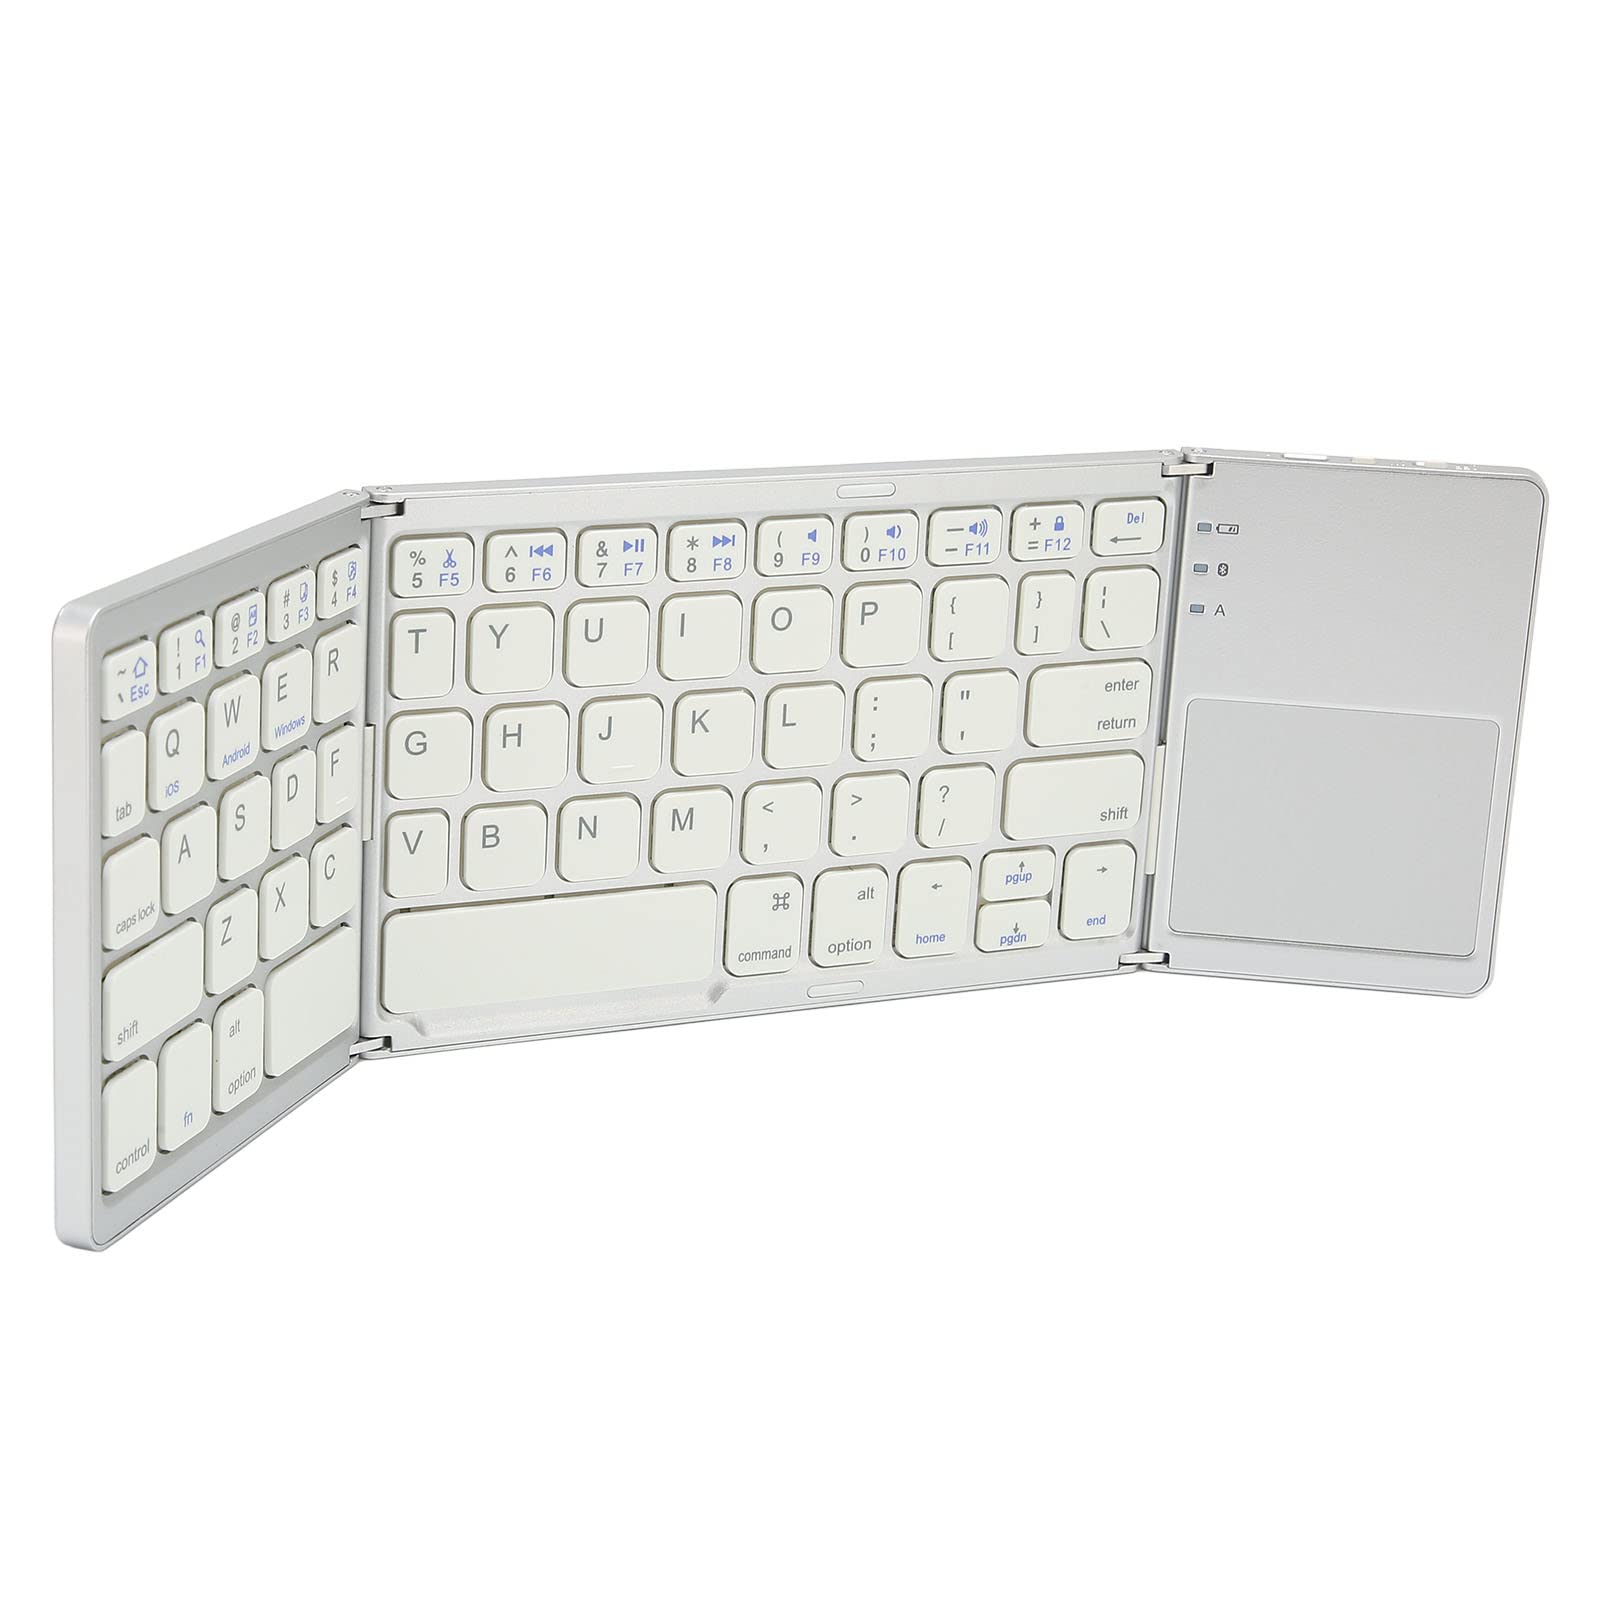 Faltbare -Tastatur, 63 Tasten, Metall, ultradünne -Tastatur, tragbare drahtlose Tastatur mit Touchpad für Windows für iOS für Android (Silber)